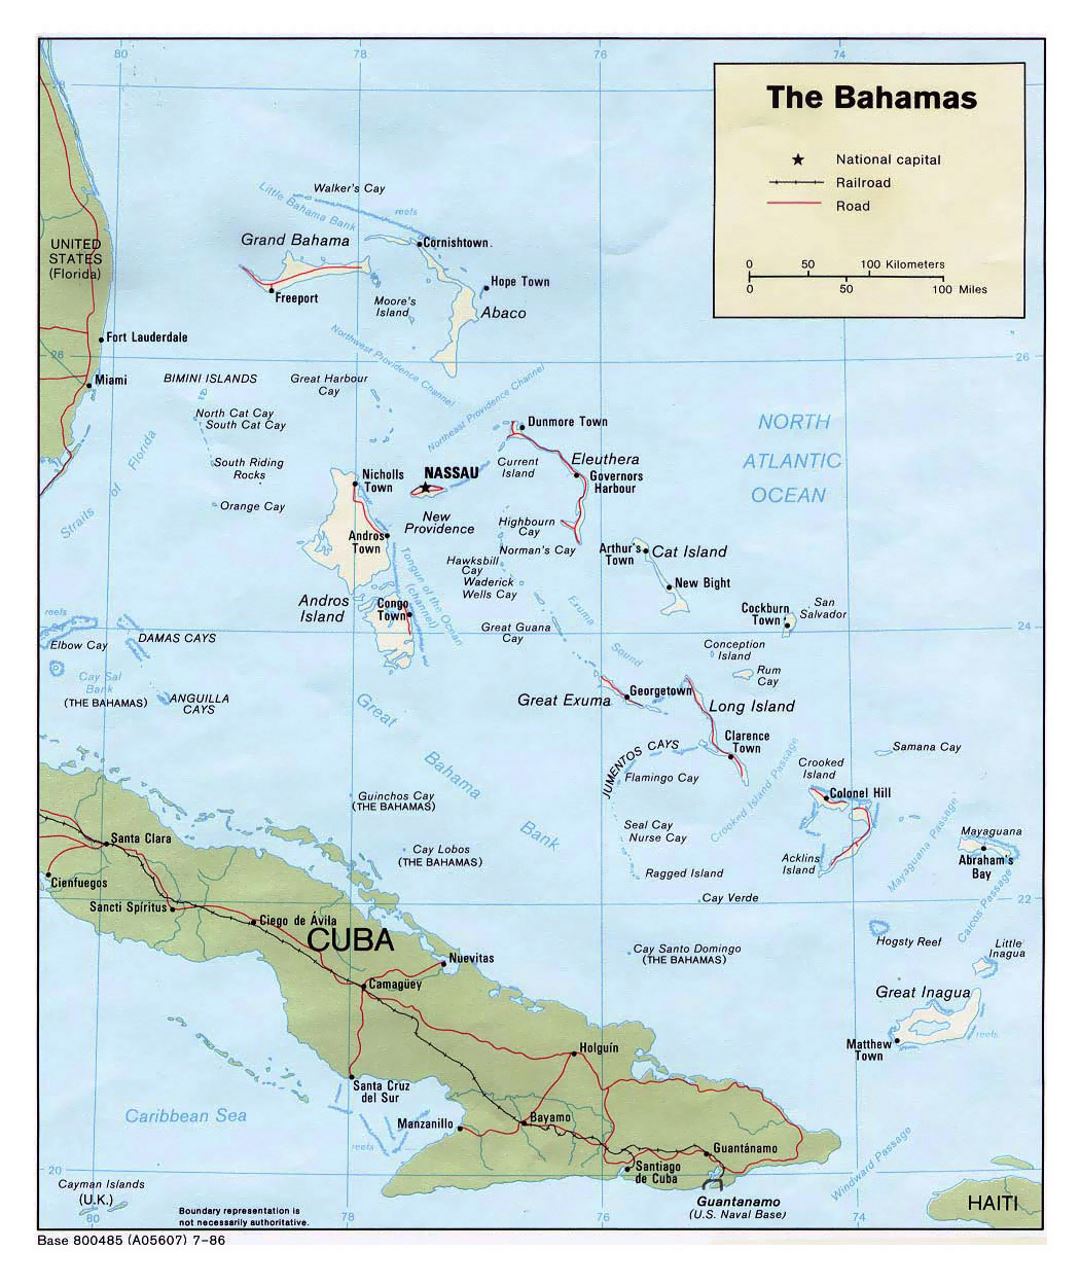 Детальная политическая карта Багамских островов с дорогами, железными дорогами и крупными городами - 1986